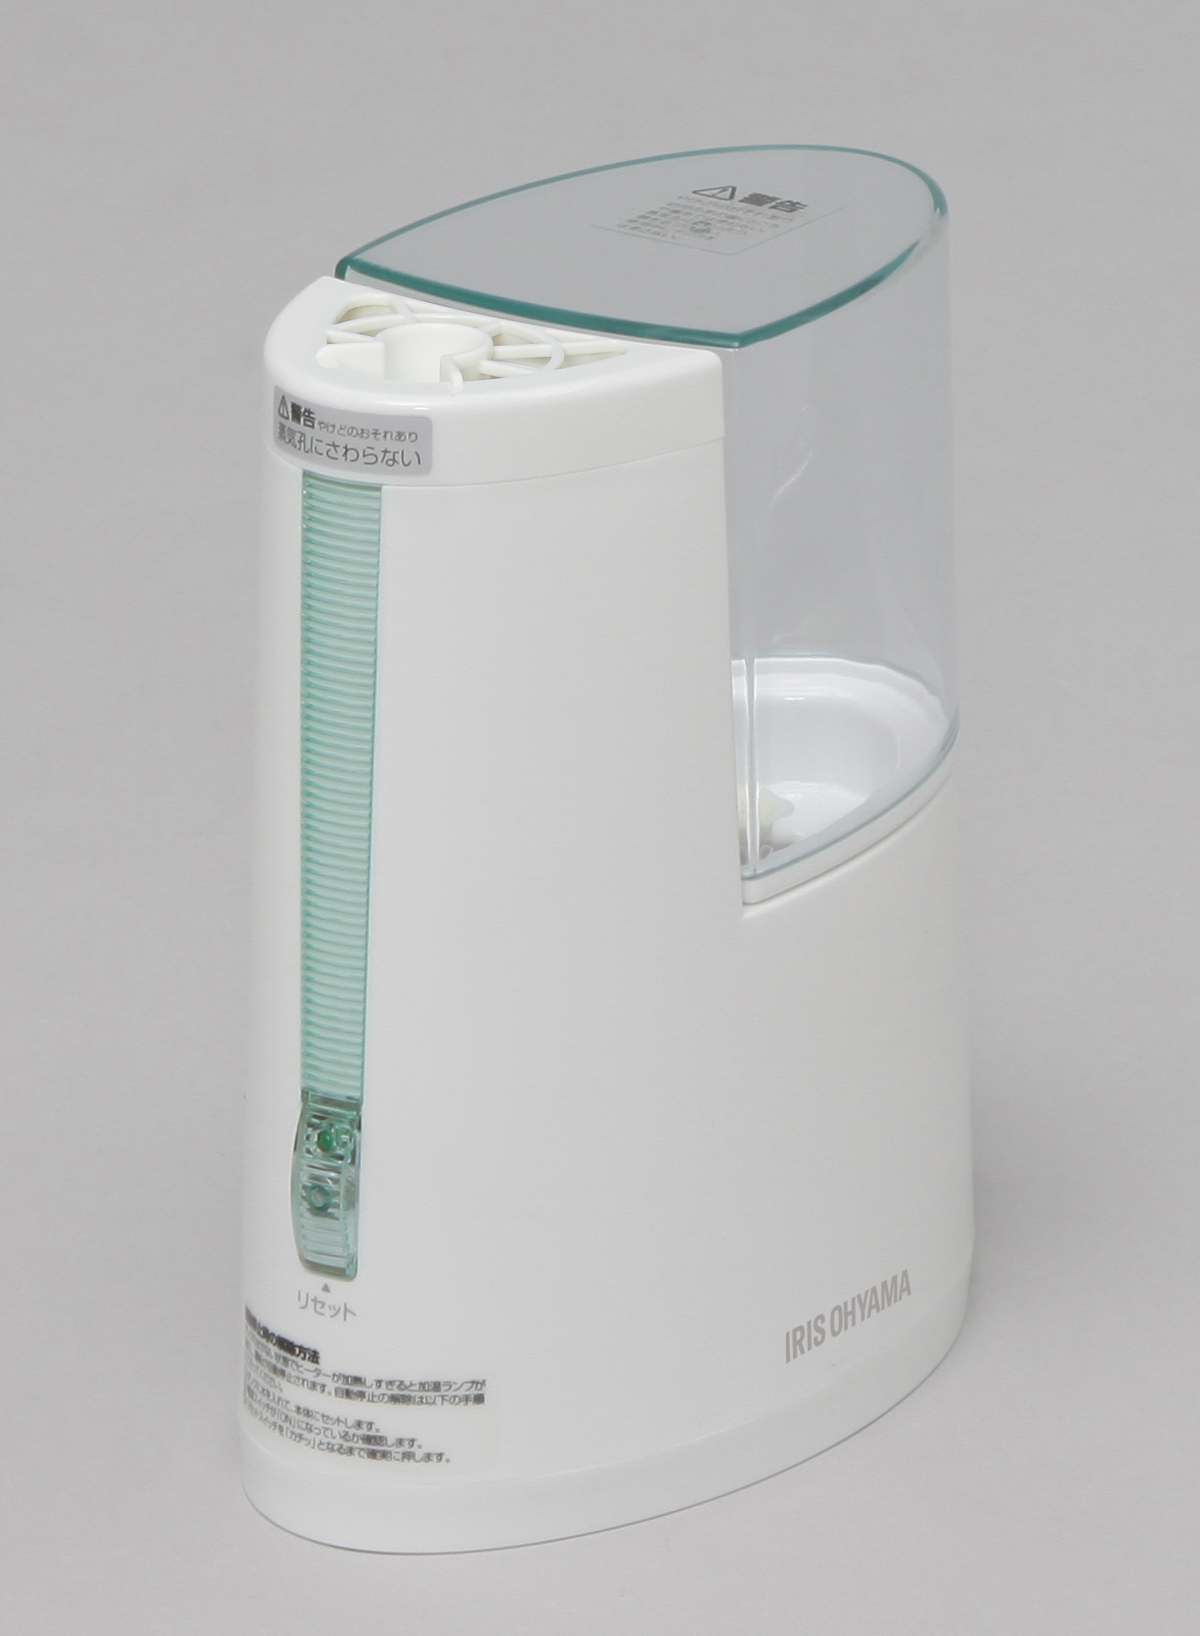 【アイリスオーヤマ】加熱式加湿器 SHM-100U-G 205×100×205mm ホワイト/グリーン